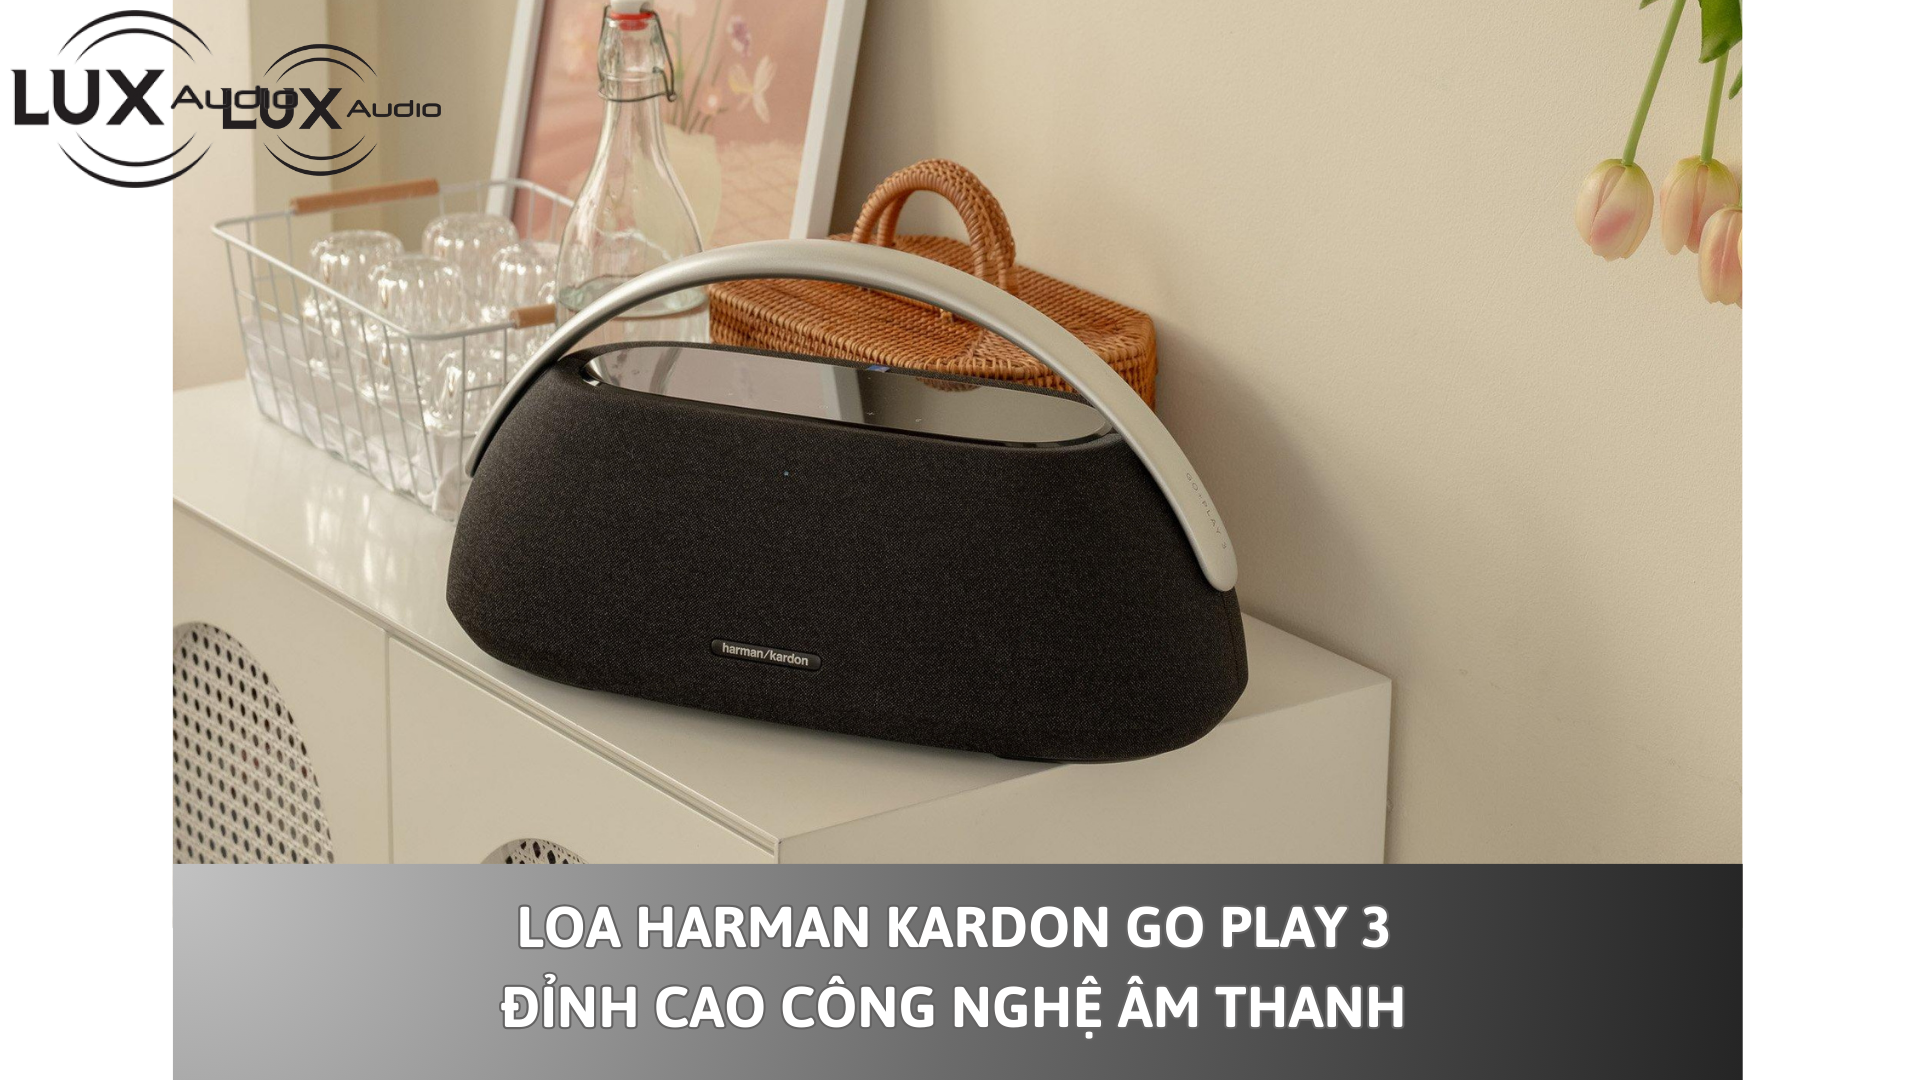 Loa Harman Kardon Go Play 3 – Đỉnh cao công nghệ âm thanh